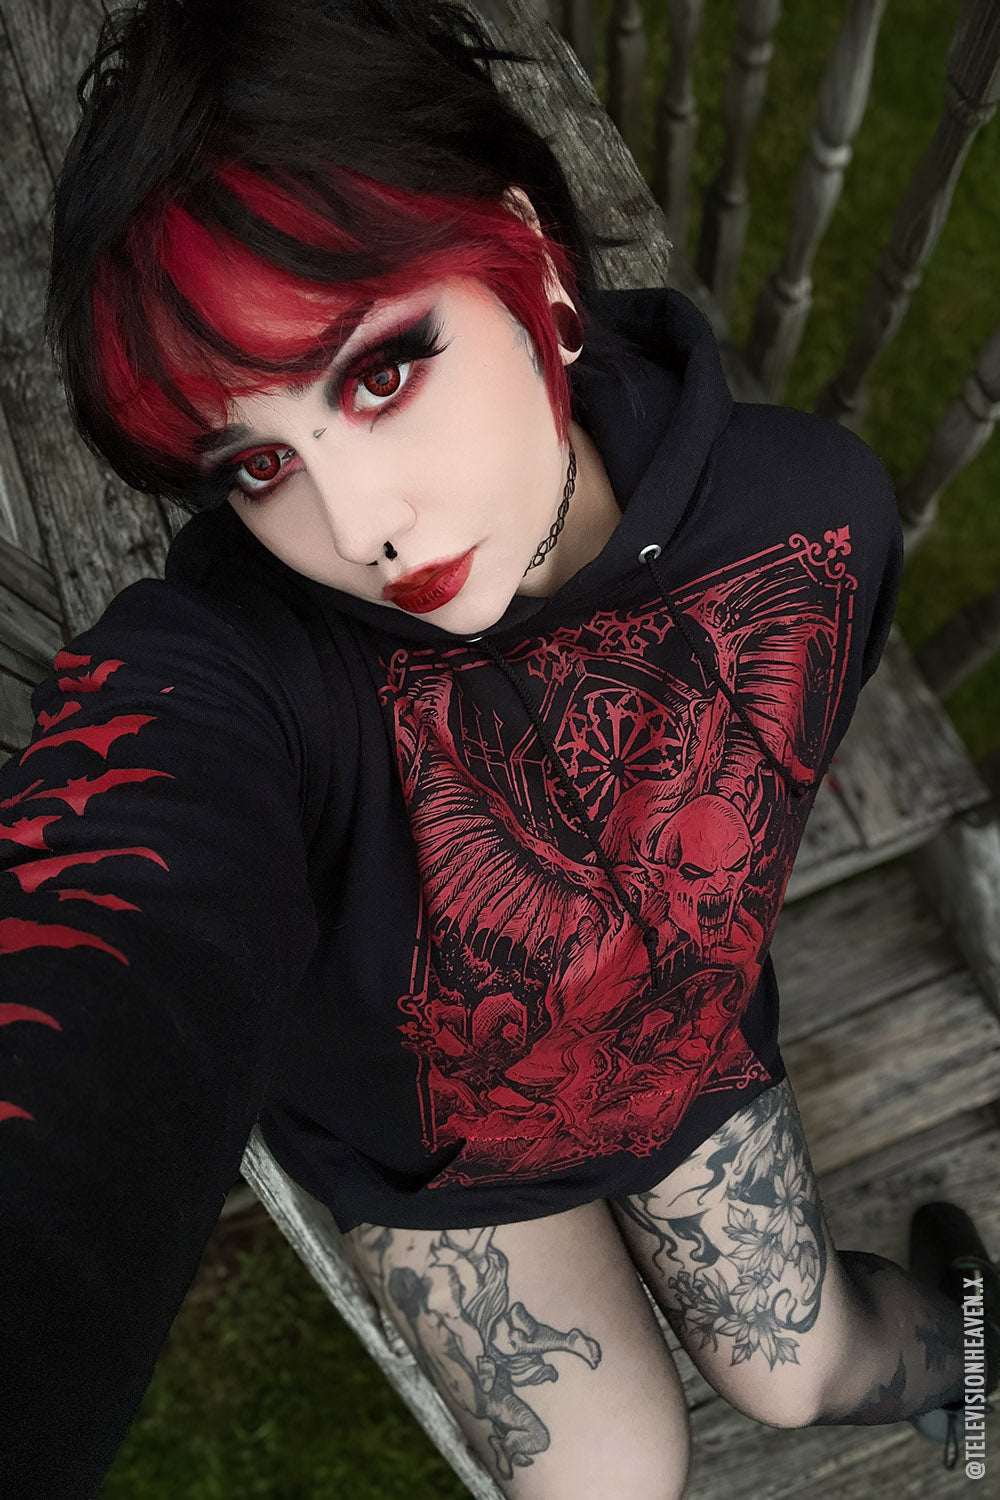 Sanguine Vampire Hoodie [BLOOD RED]